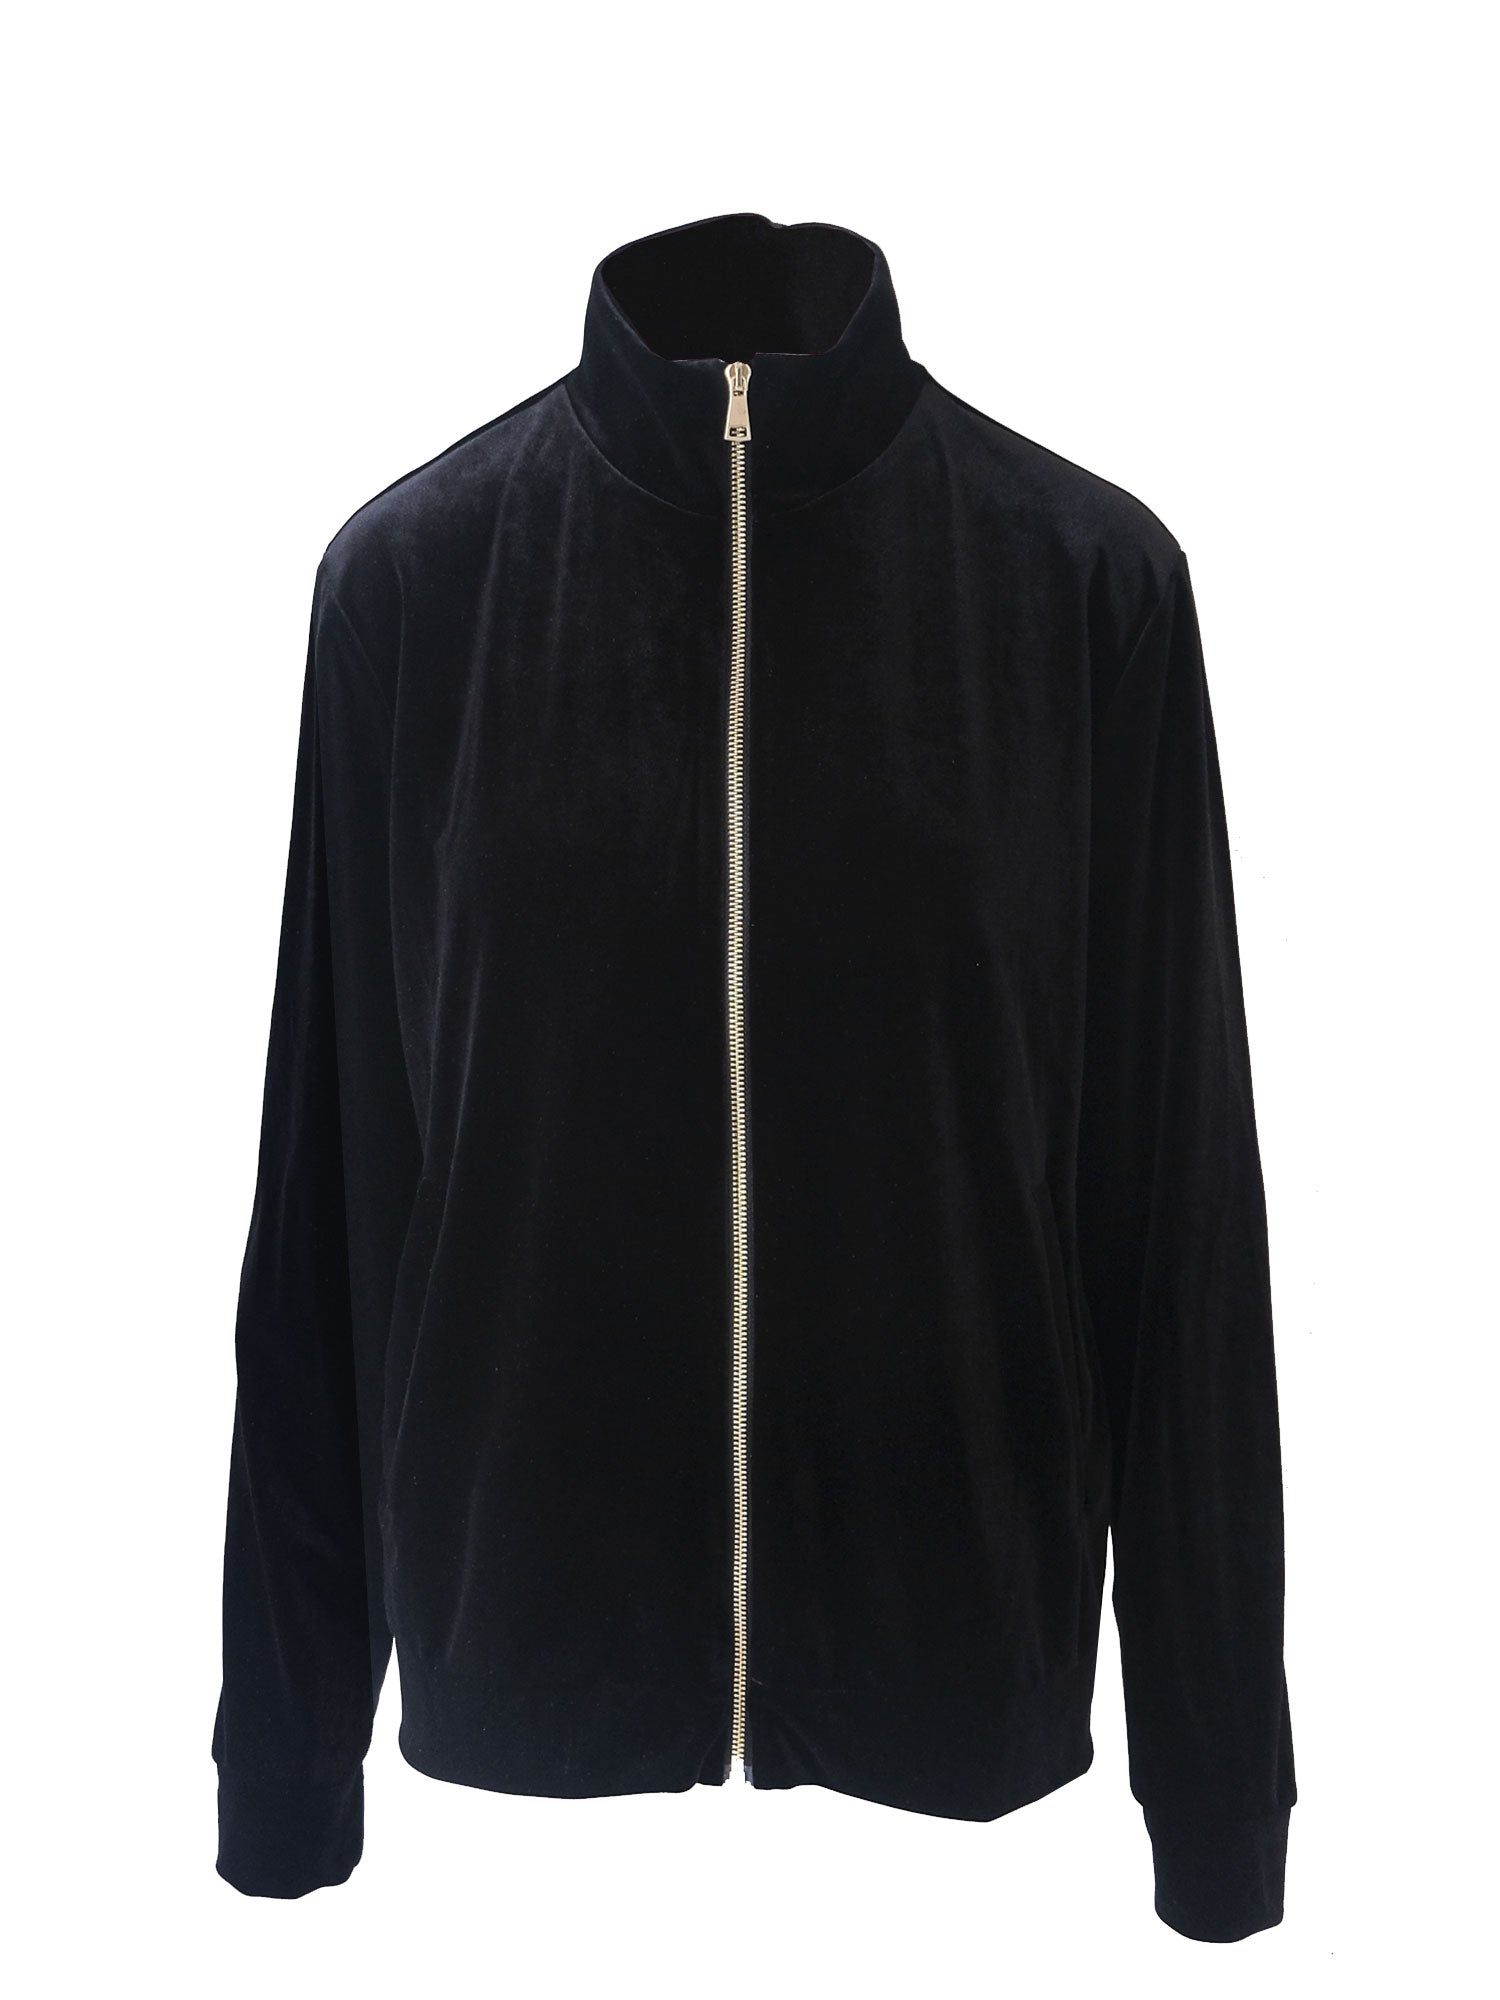 REINE - black chenille jacket